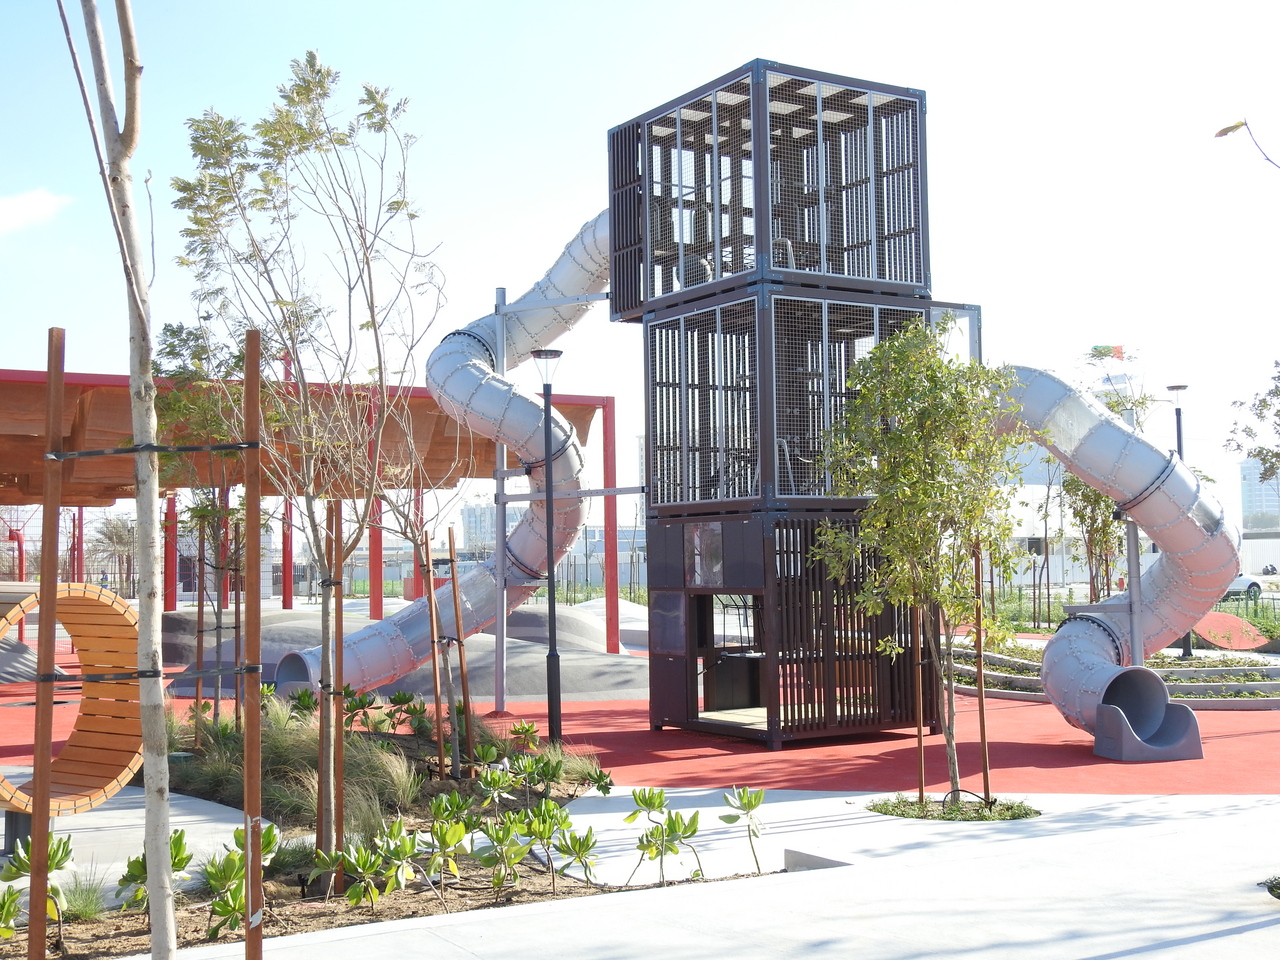 Spielspaß in Abu Dhabi: Eine Oase der Kreativität für Kinder und Familien